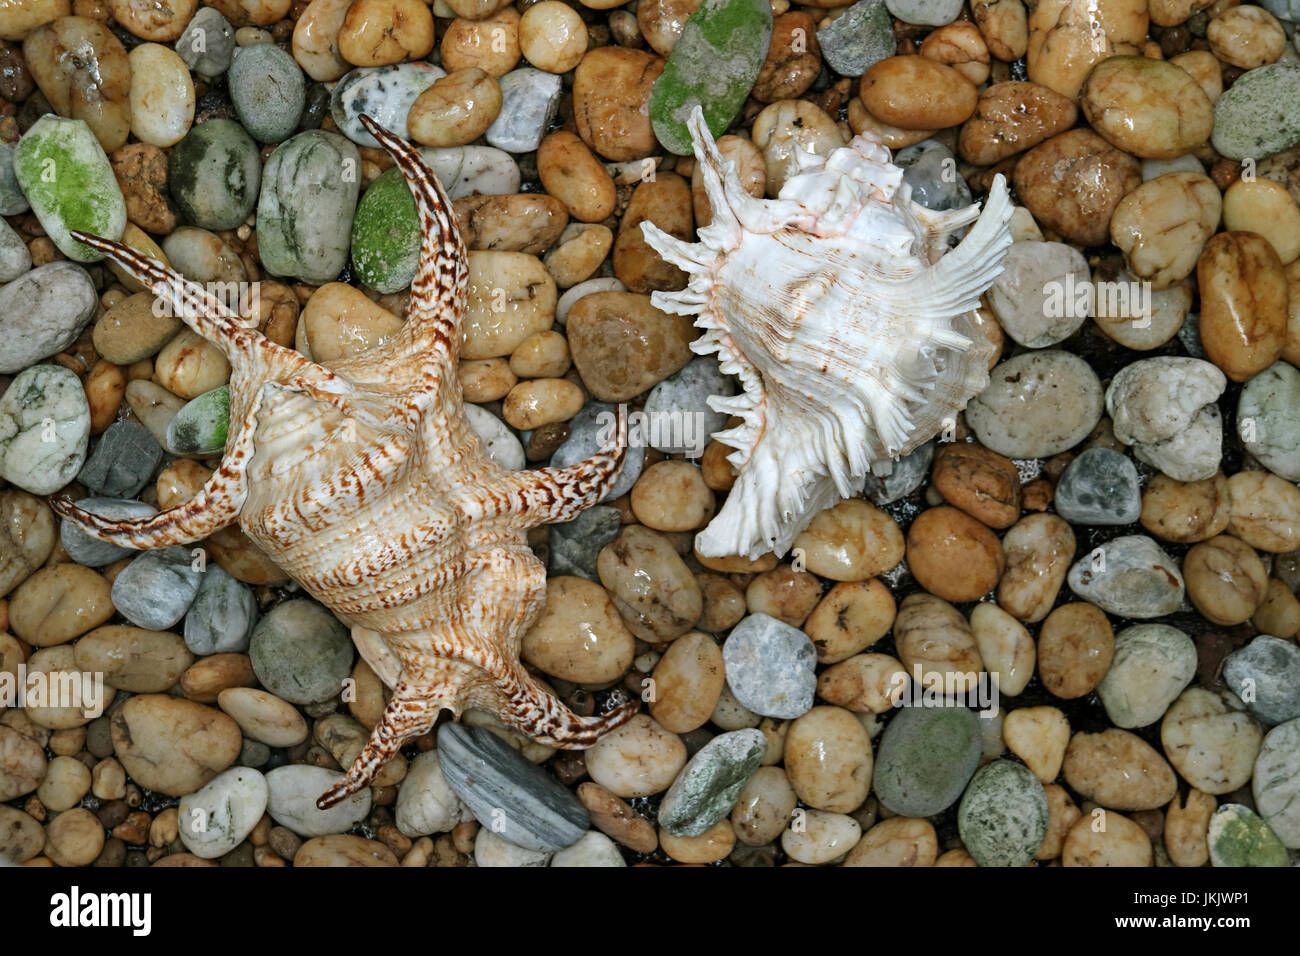 Two natural gorgeous seashells on the pebble stone ground Stock Photo